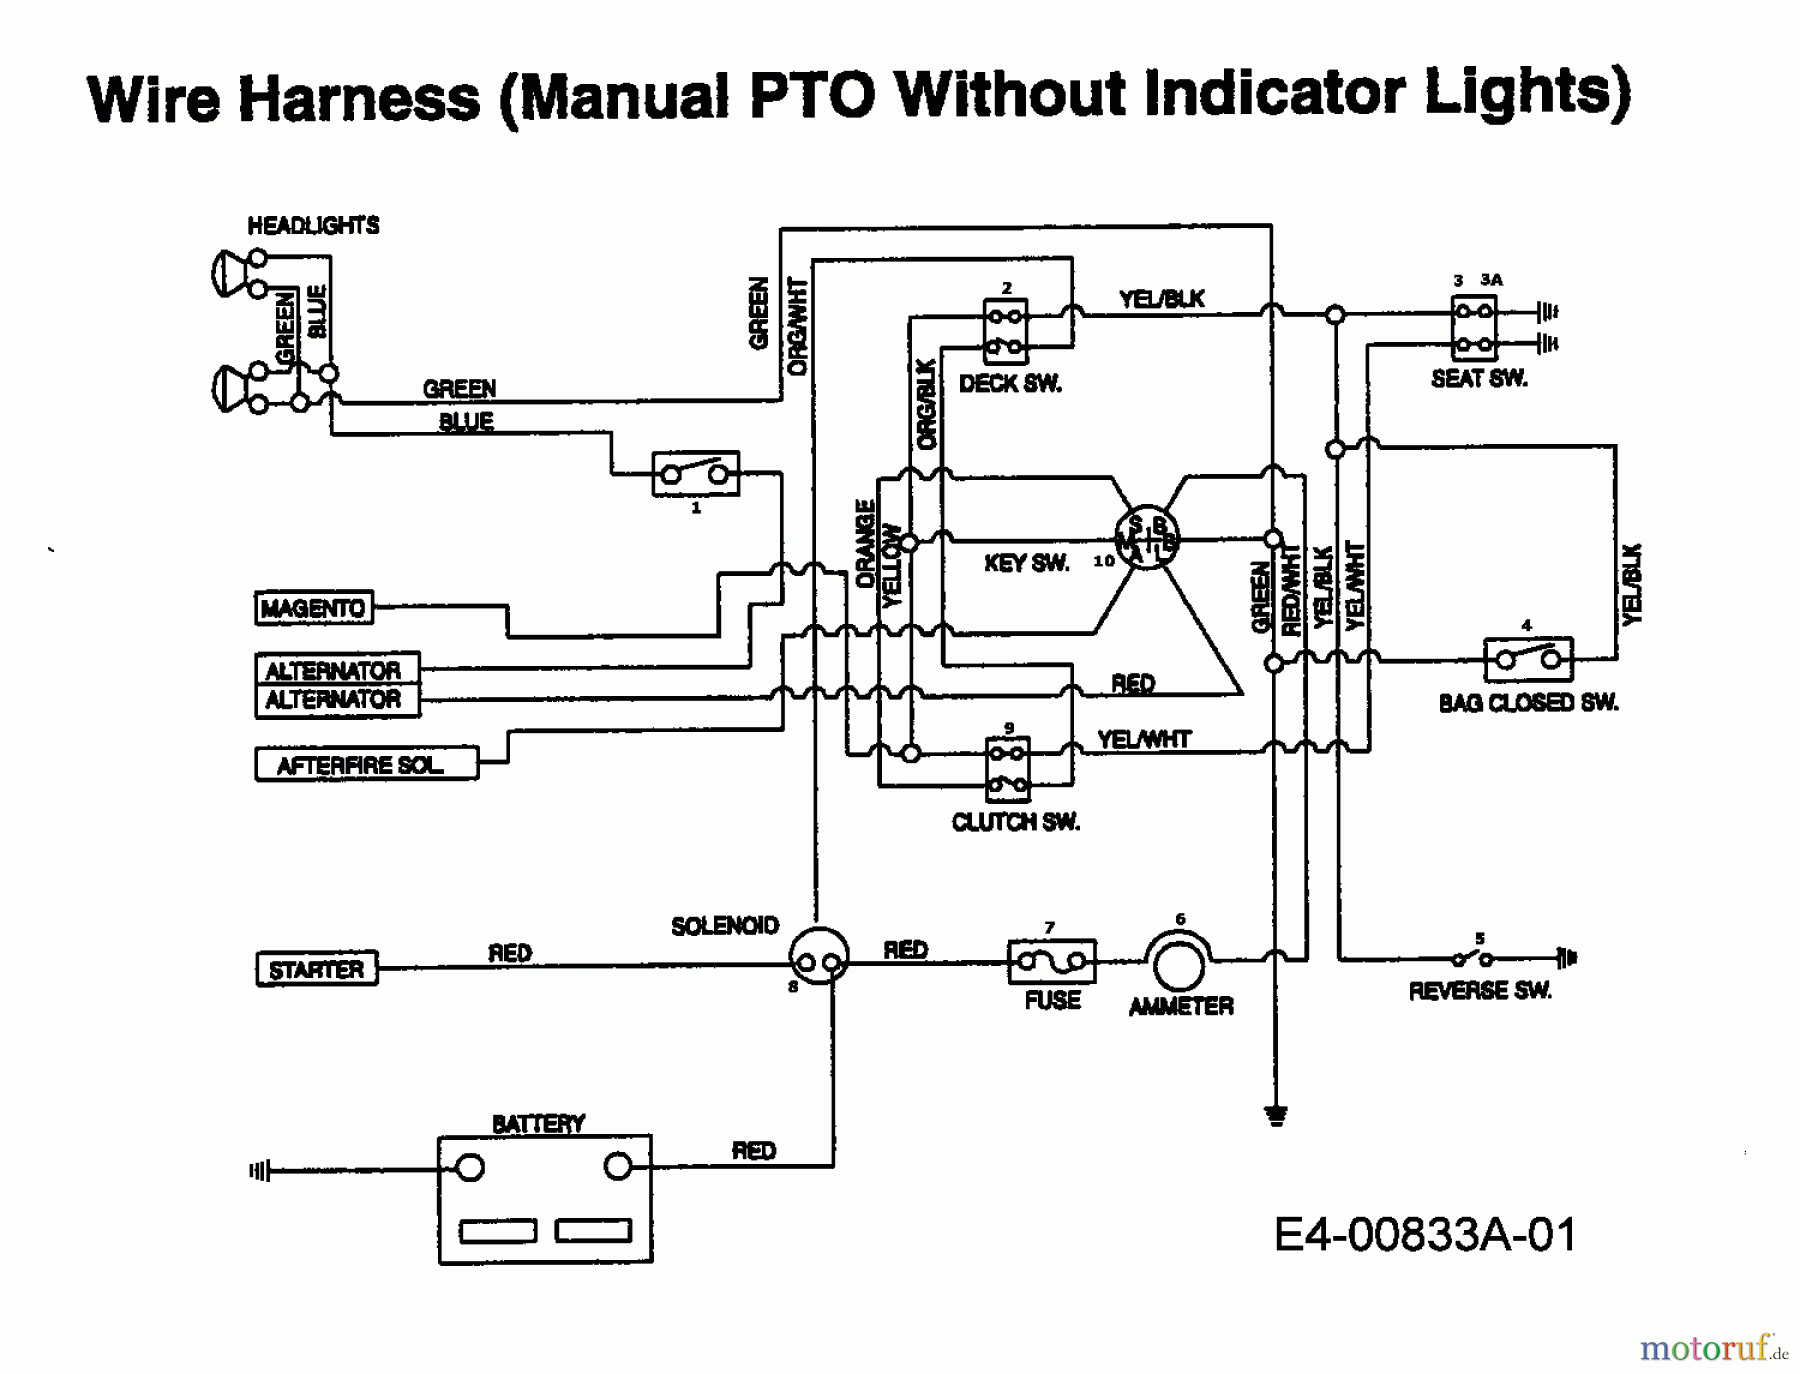  MTD Tracteurs de pelouse IB 162 HST 13AF795N606  (1998) Plan électrique sans lampe de contrôle